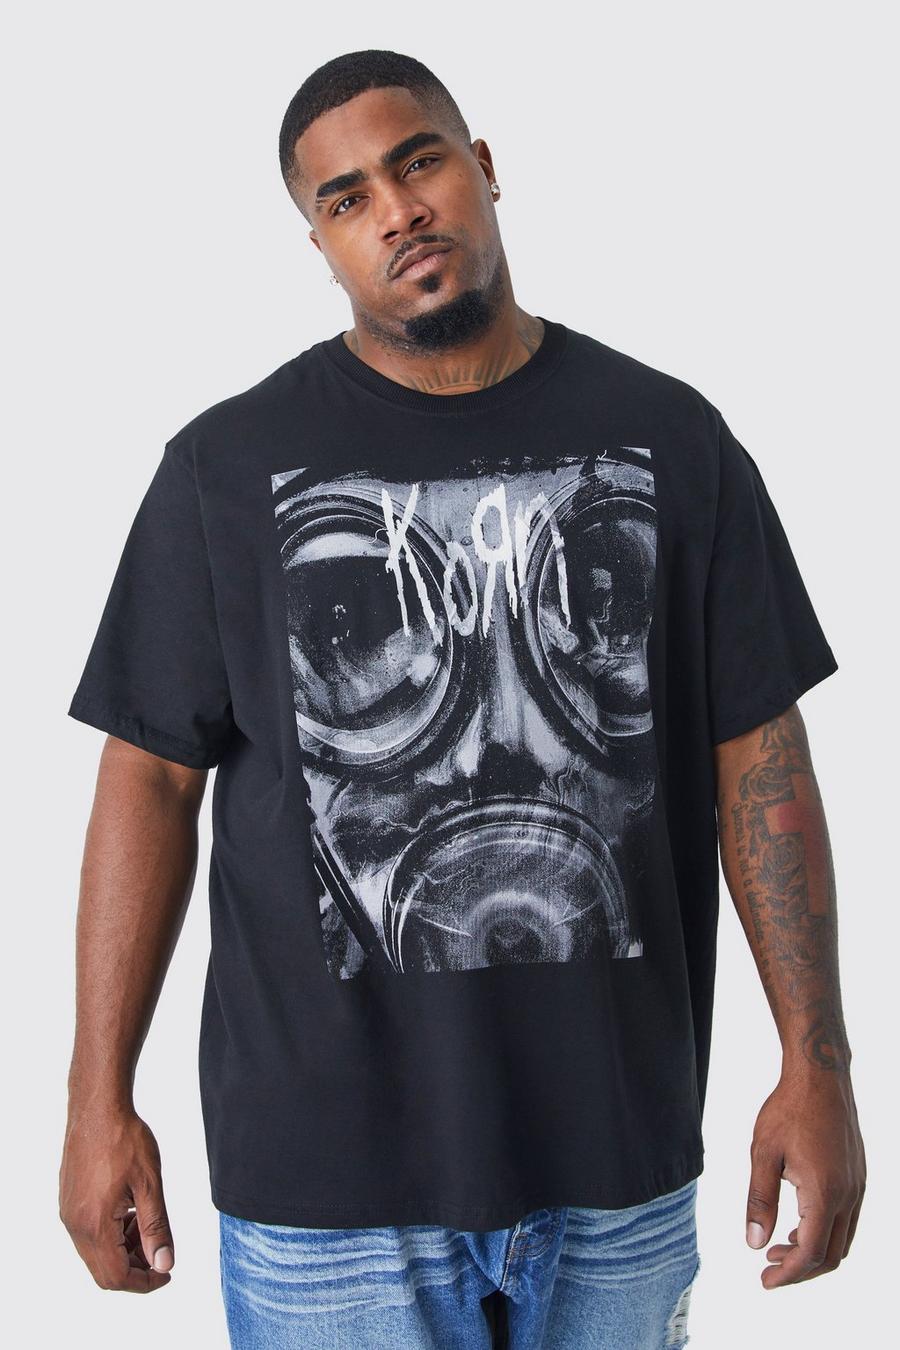 T-shirt Plus Size ufficiale Korn, Black